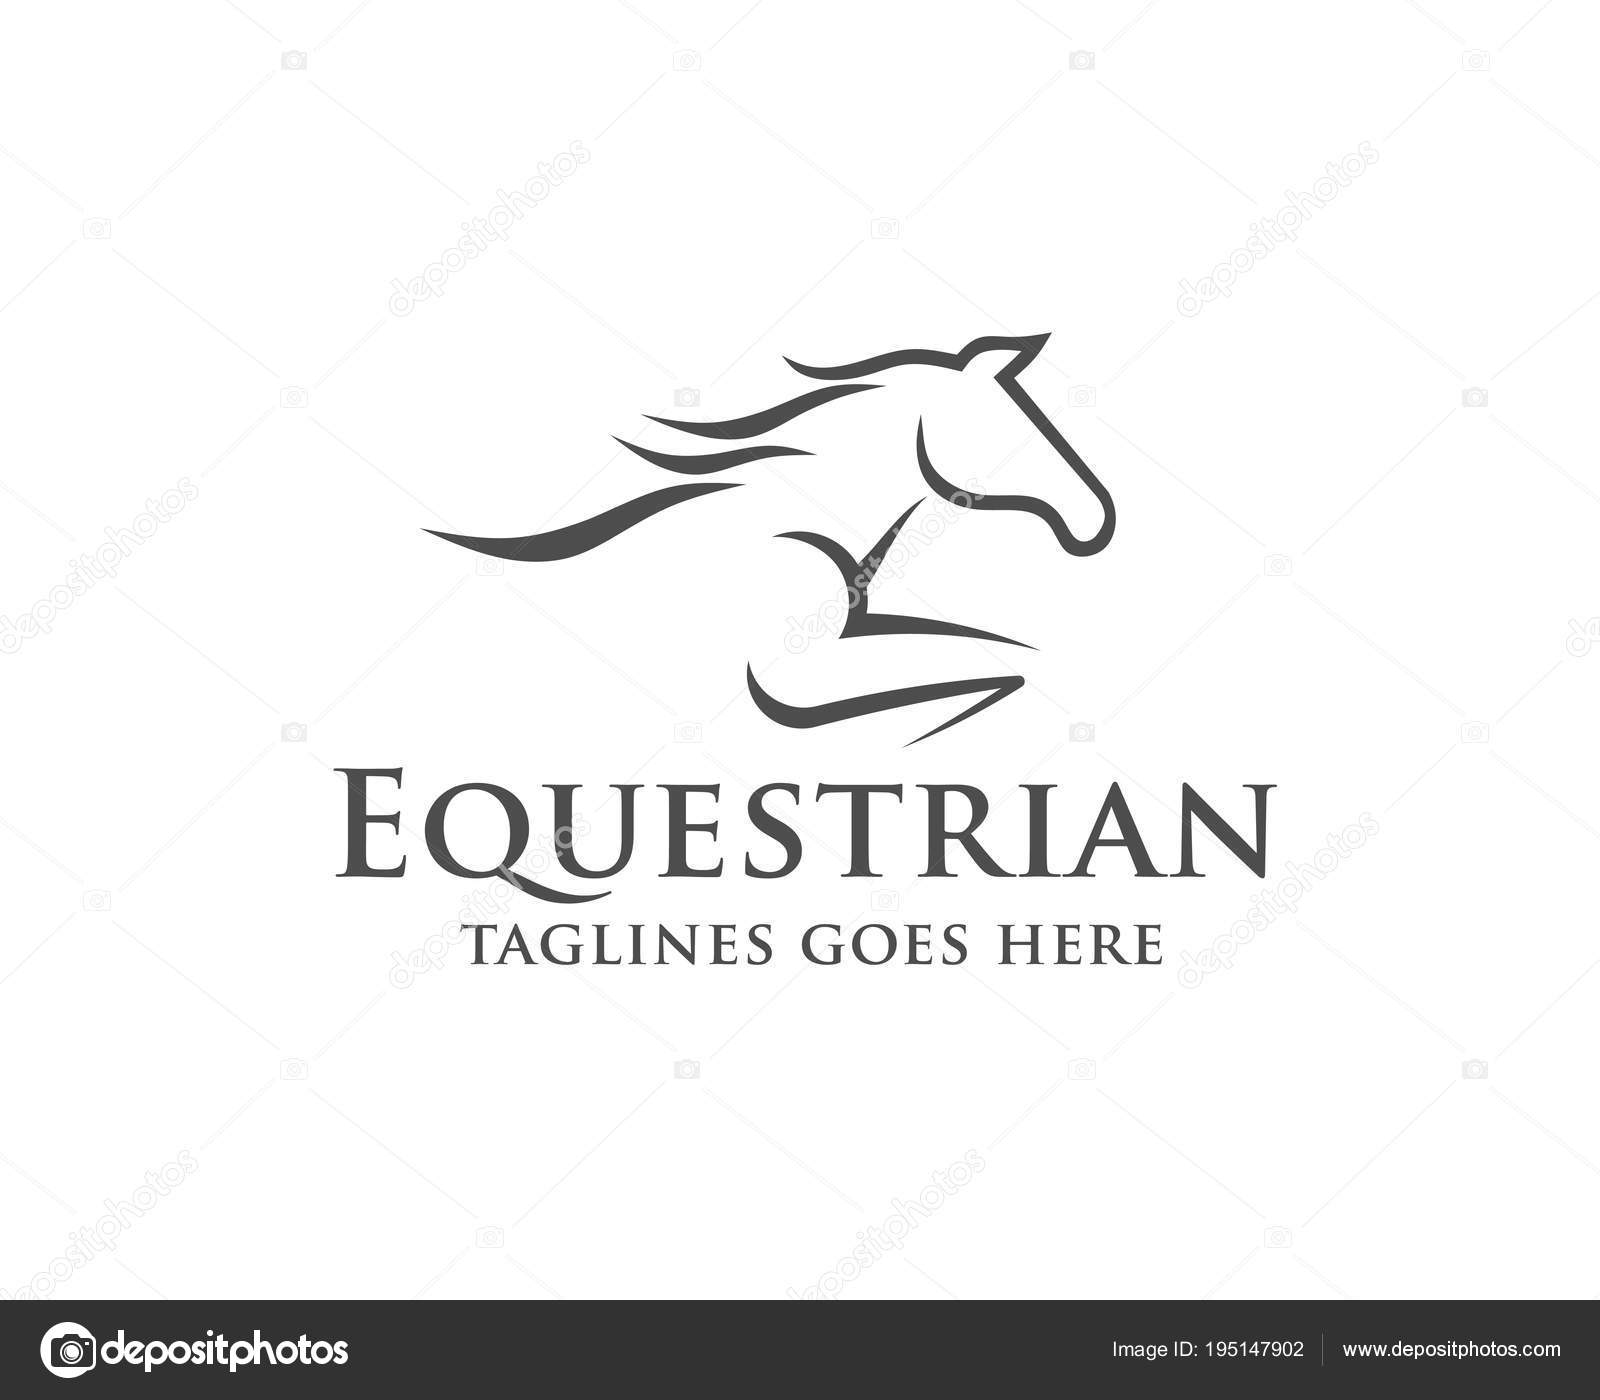 Modelo de vetor de design de logotipo de silhueta de cavalo de